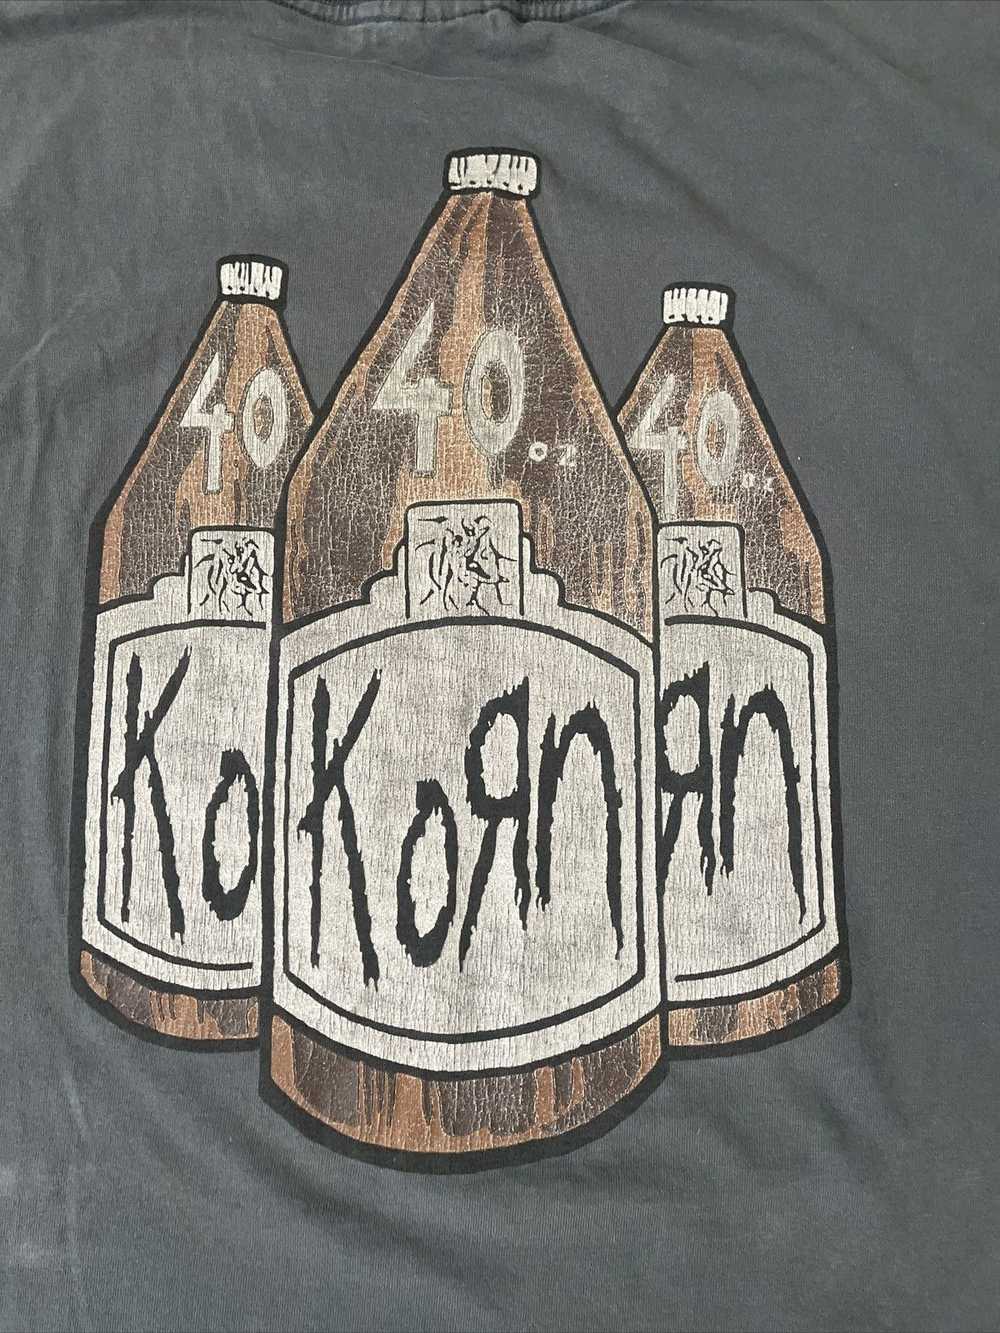 Band Tees Korn 90’s band tee shirt 40’s 40 ounce … - image 6